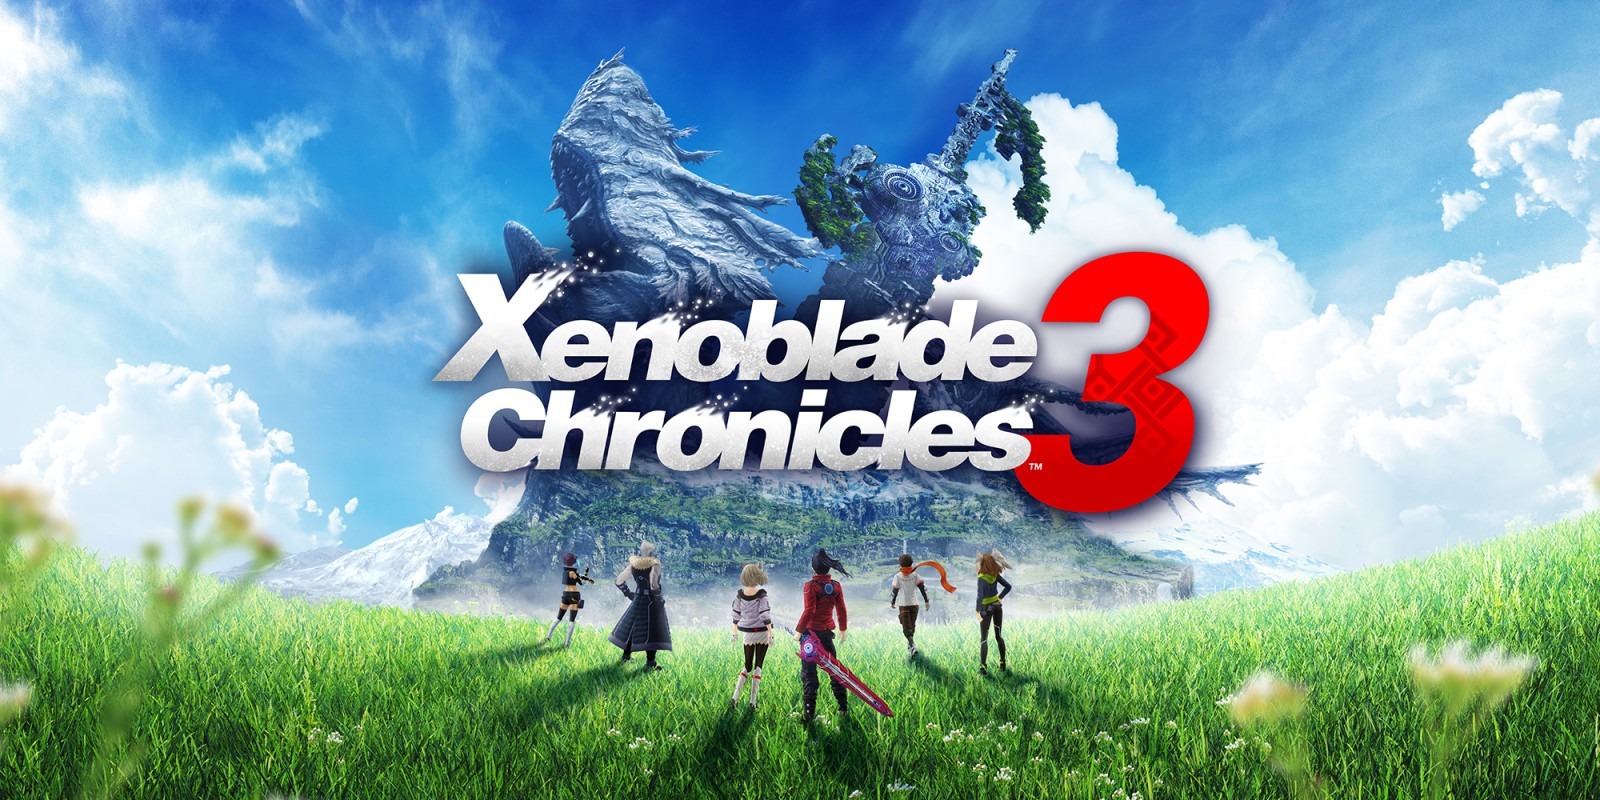 Xenoblade Chronicles 3: confira as notas da mídia especializada